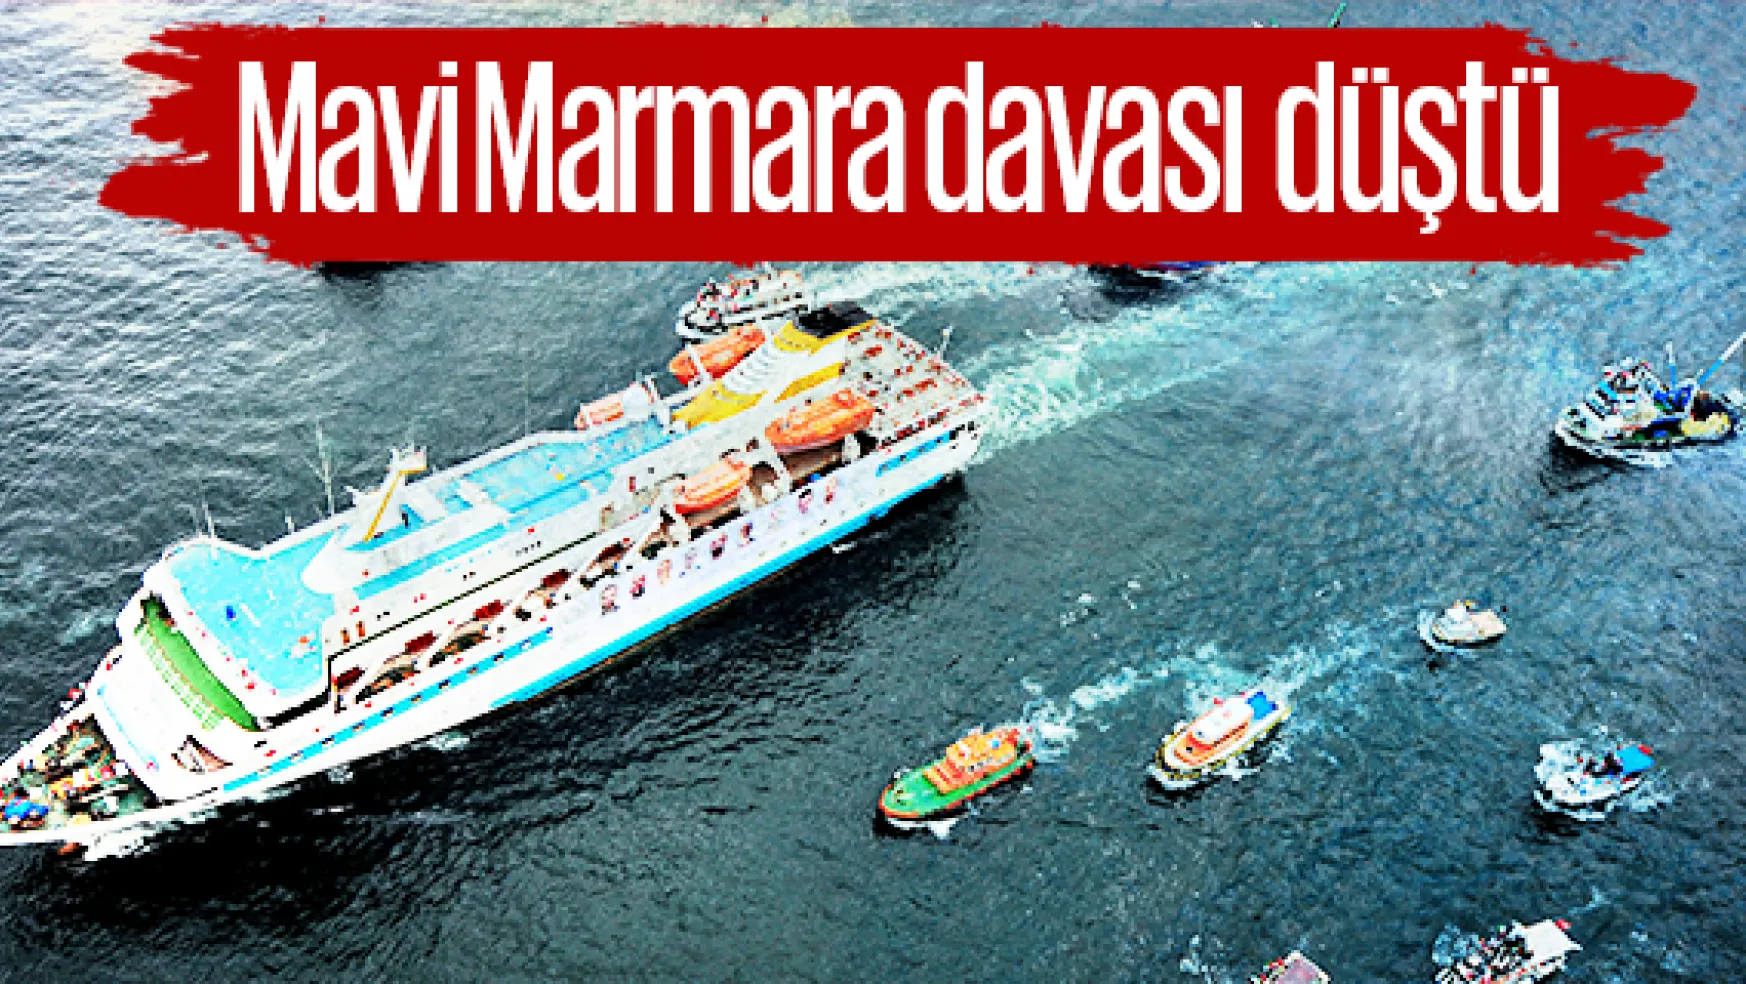 Mavi Marmara'ya saldırı davası düştü